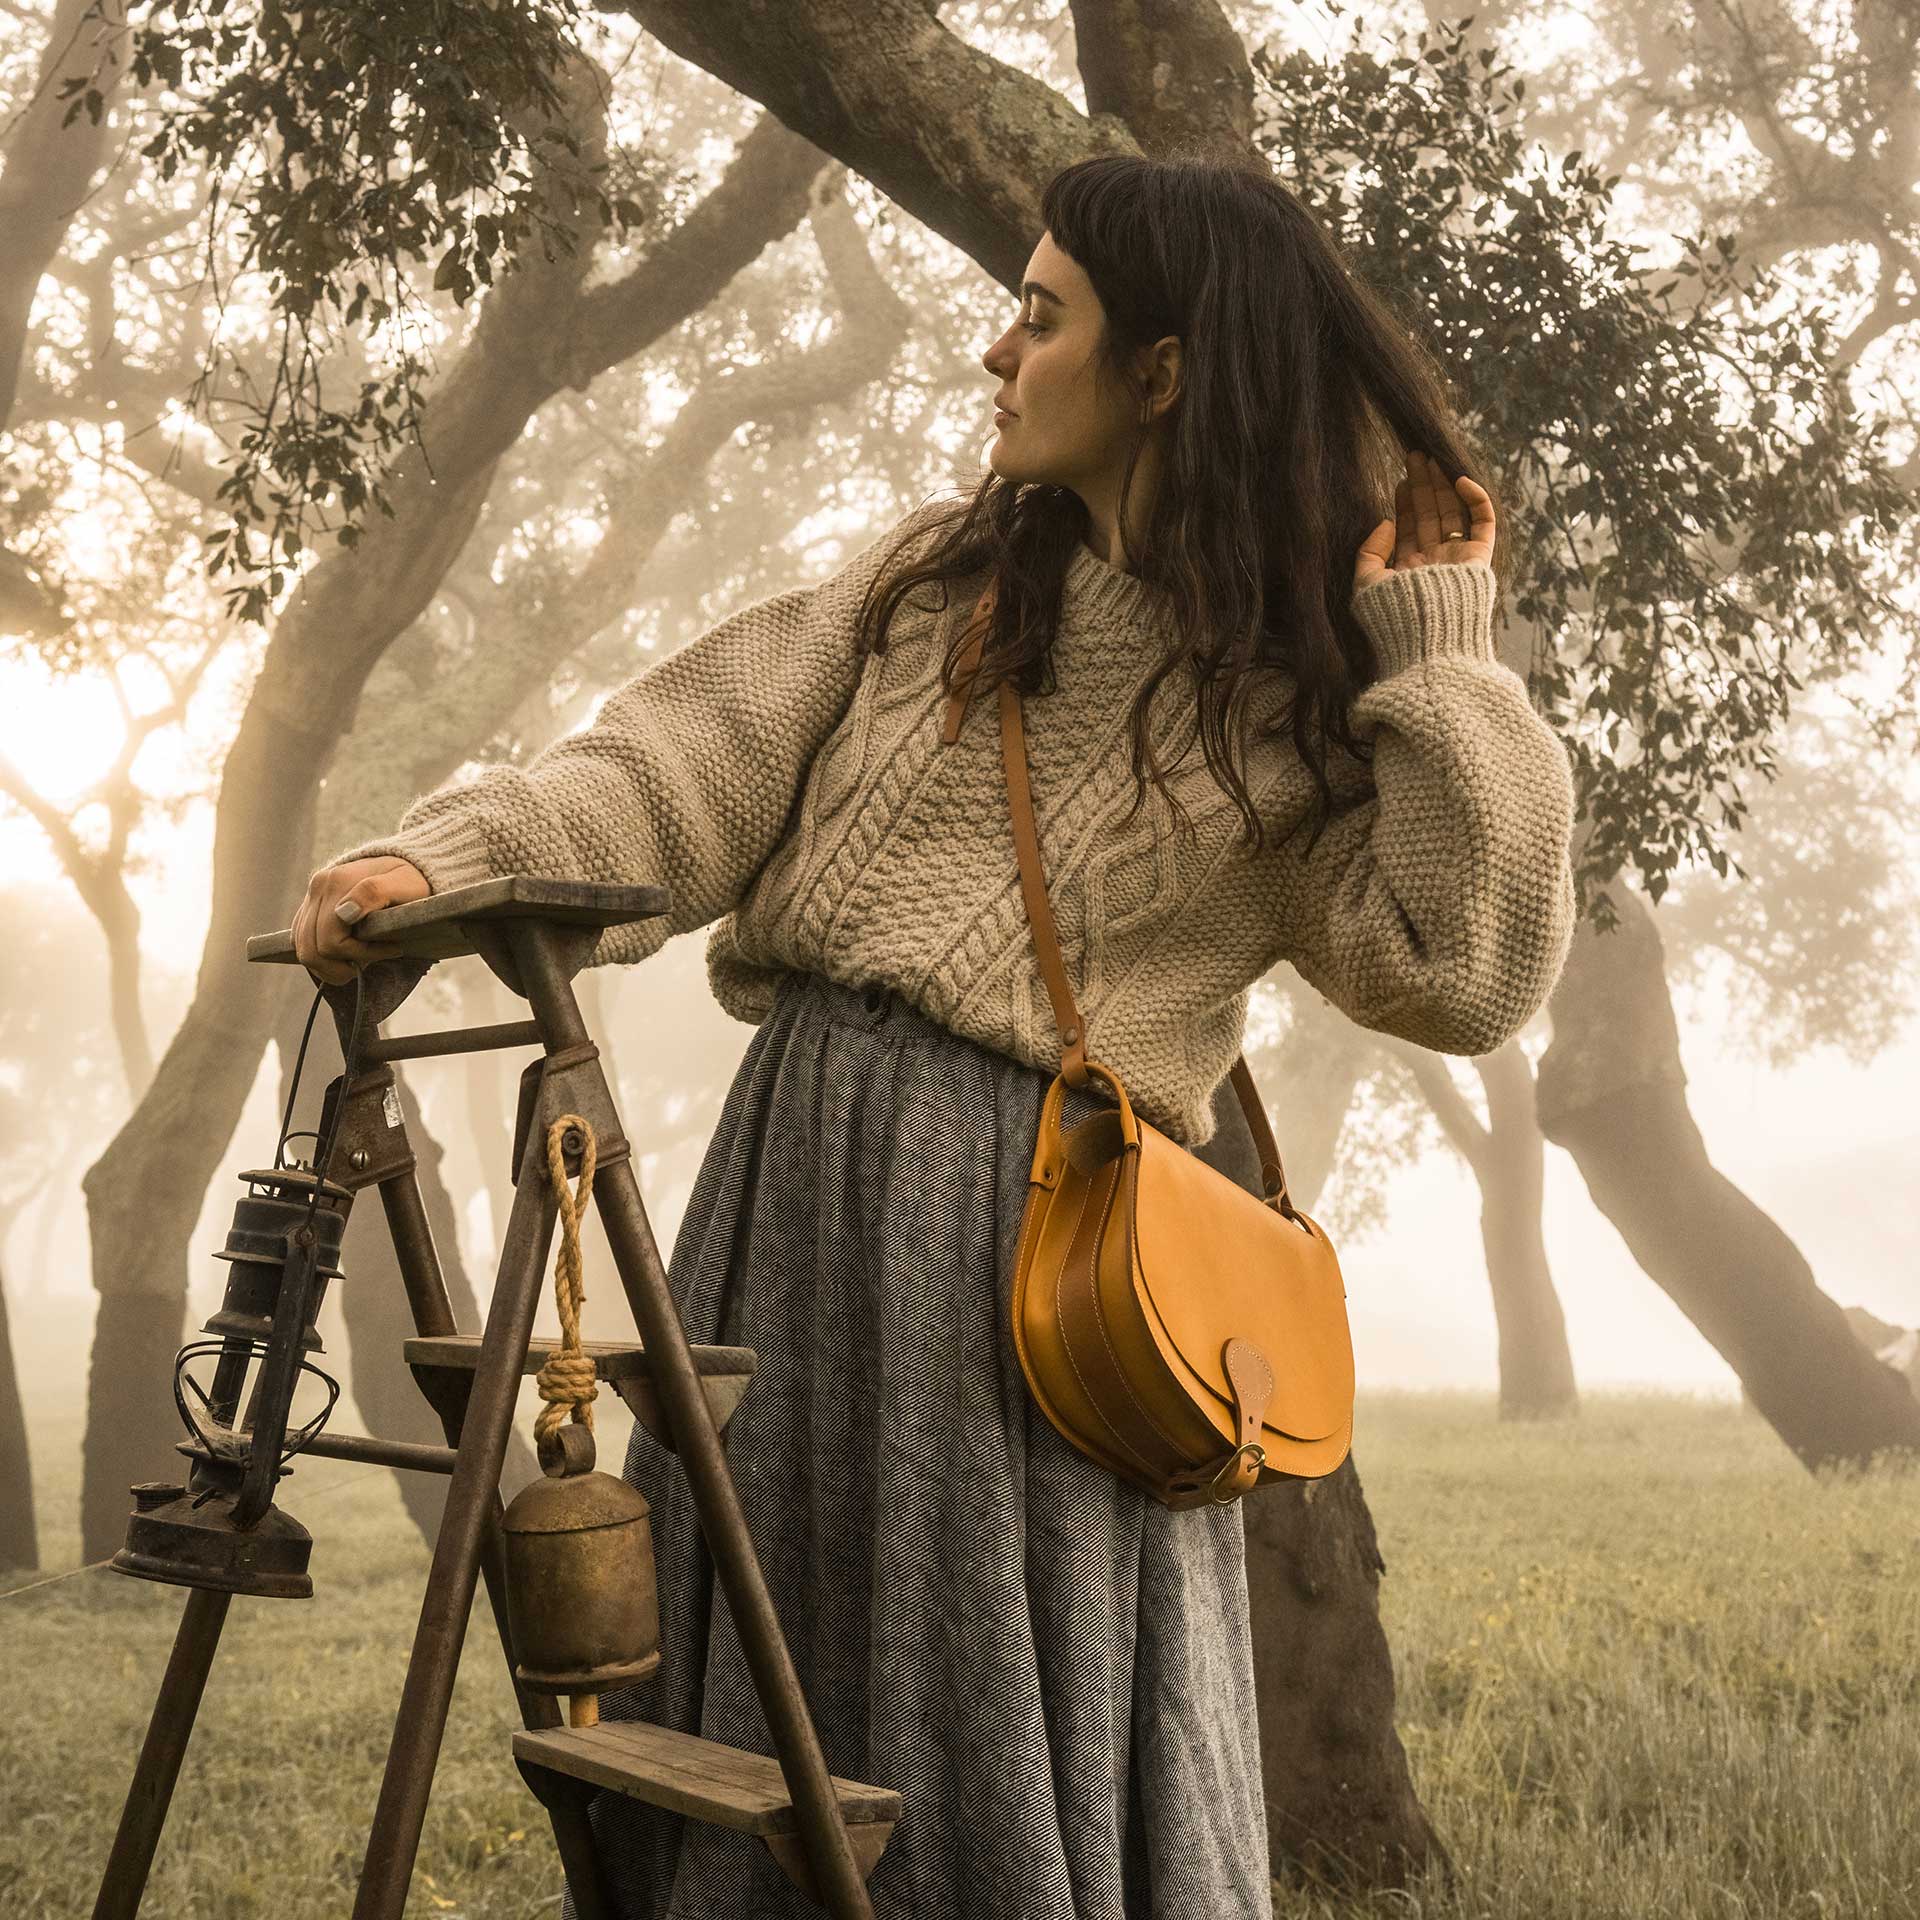 Une femme dans la foret pose sur un tabouret avec une gibeciere en bandouilière